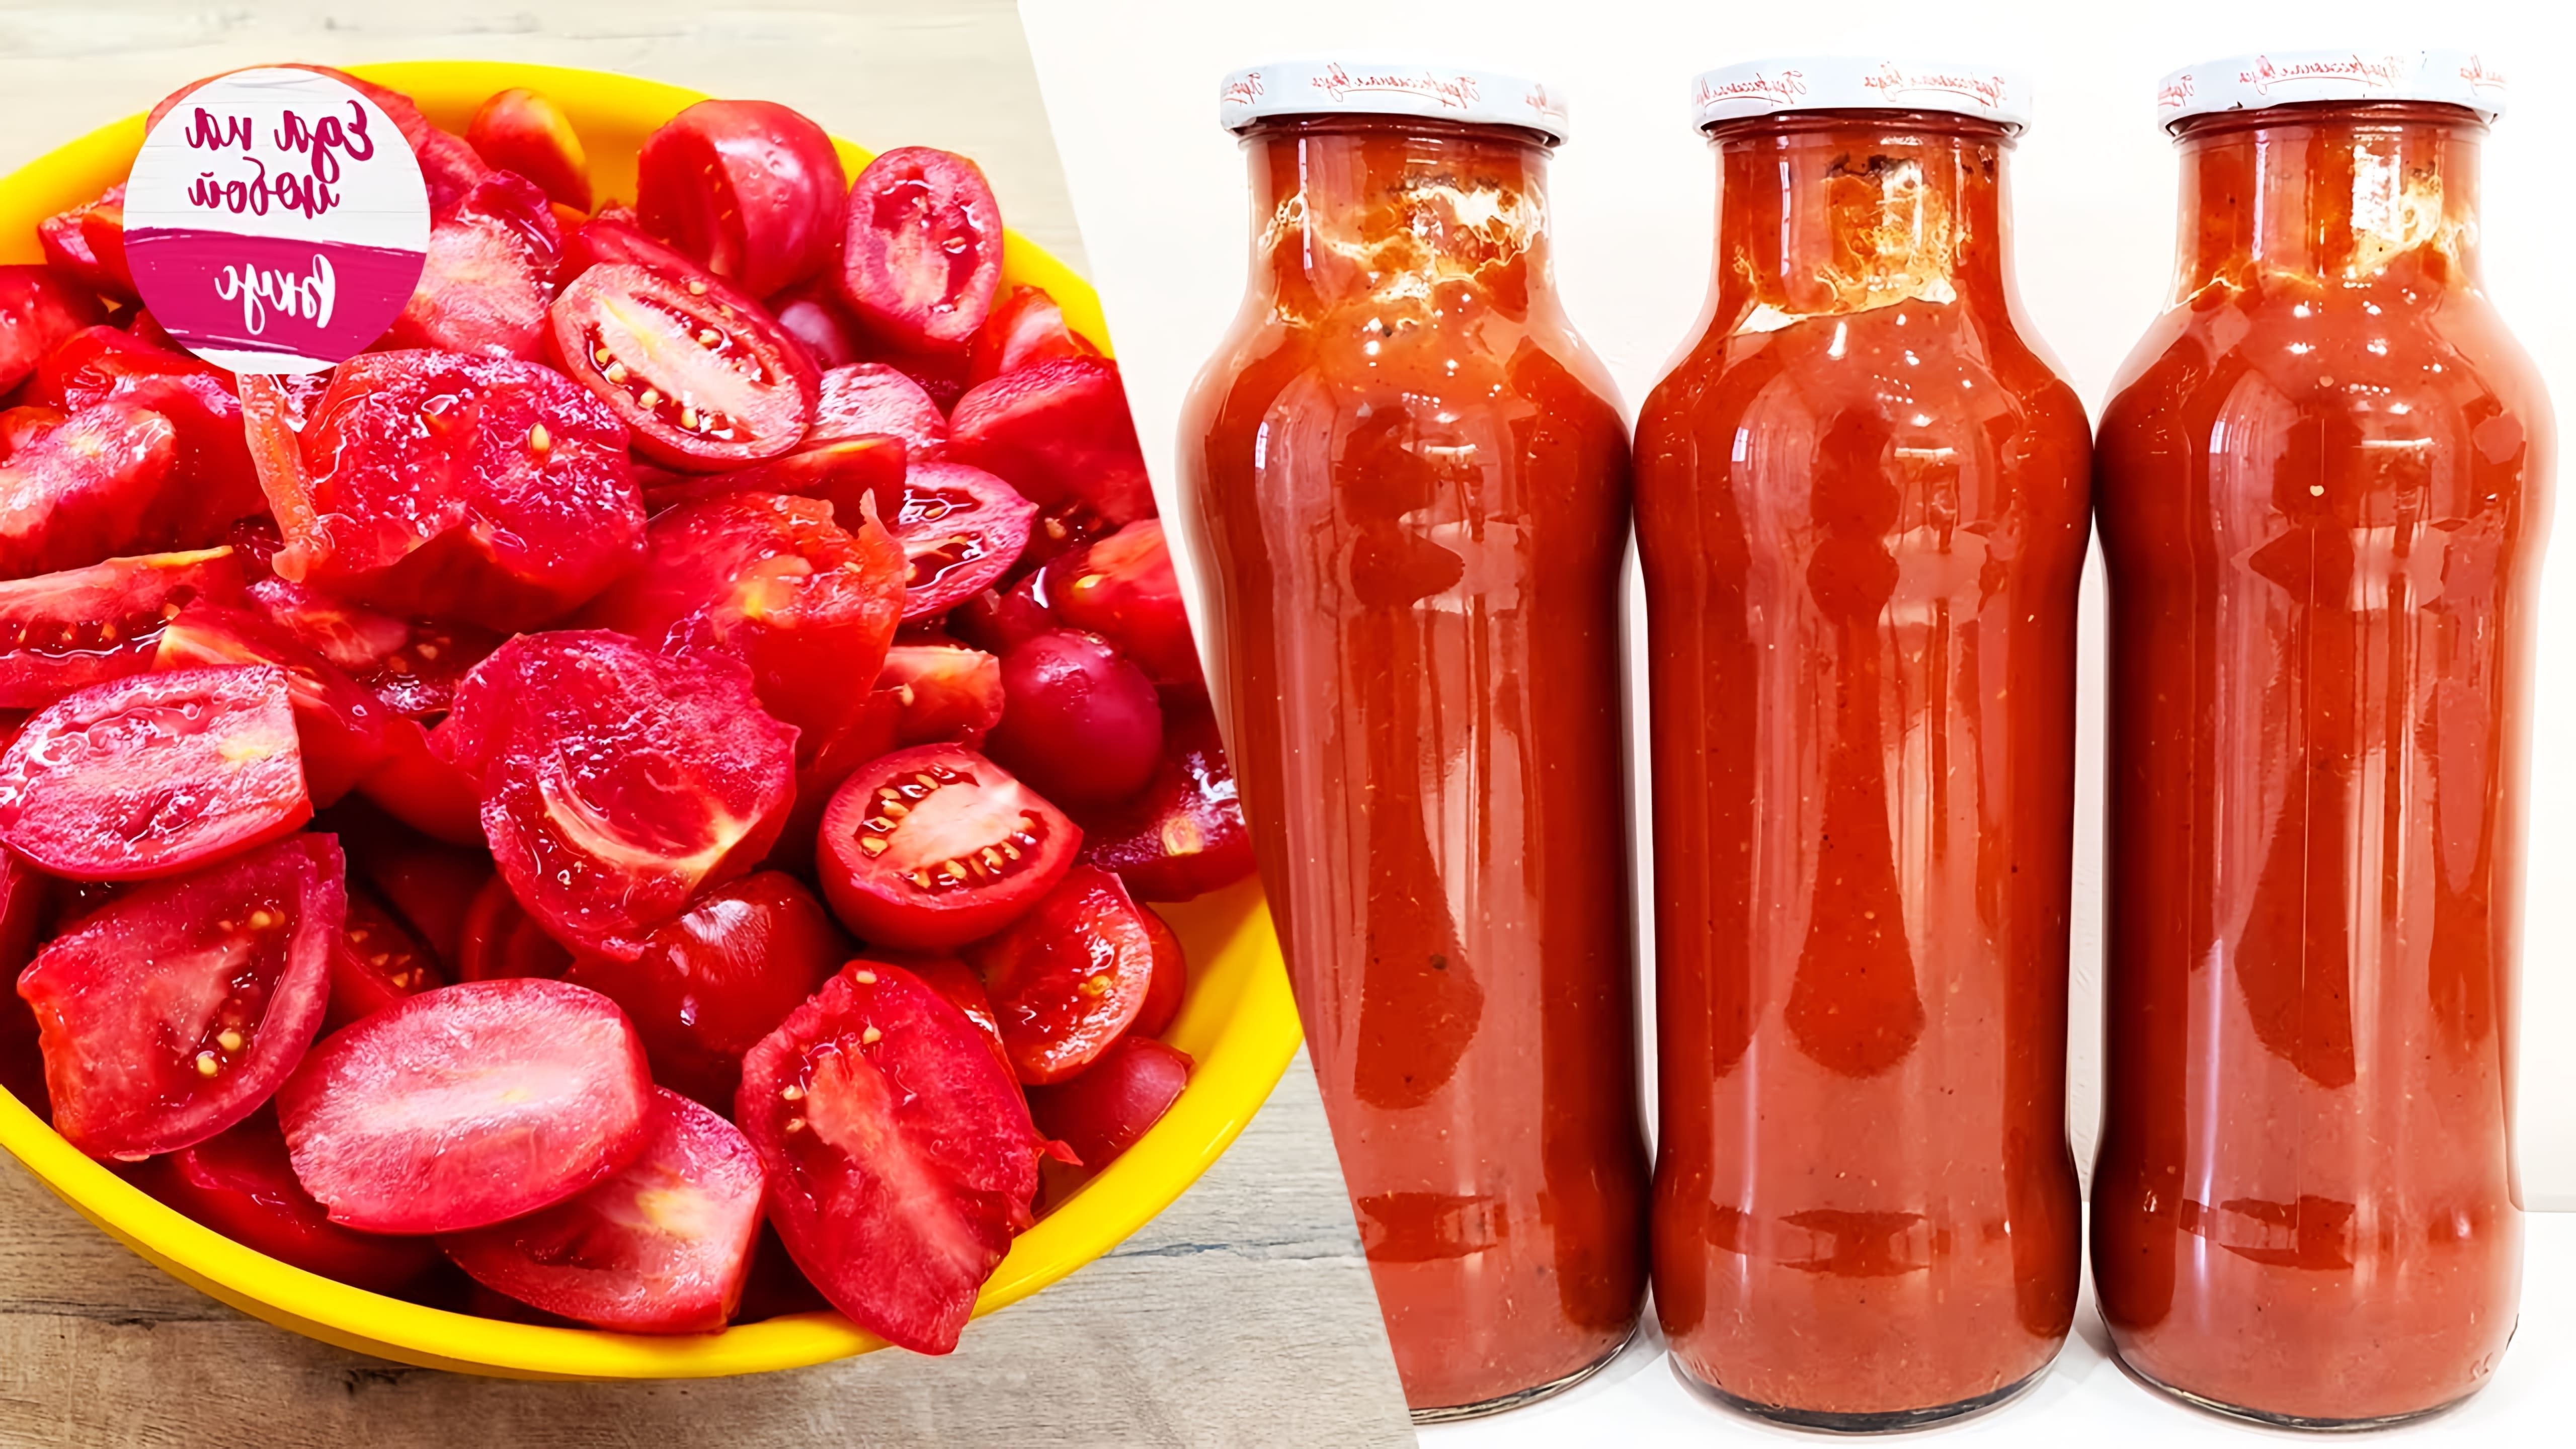 В этом видео Анастасия показывает, как приготовить густой томатный соус кетчуп без загустителя